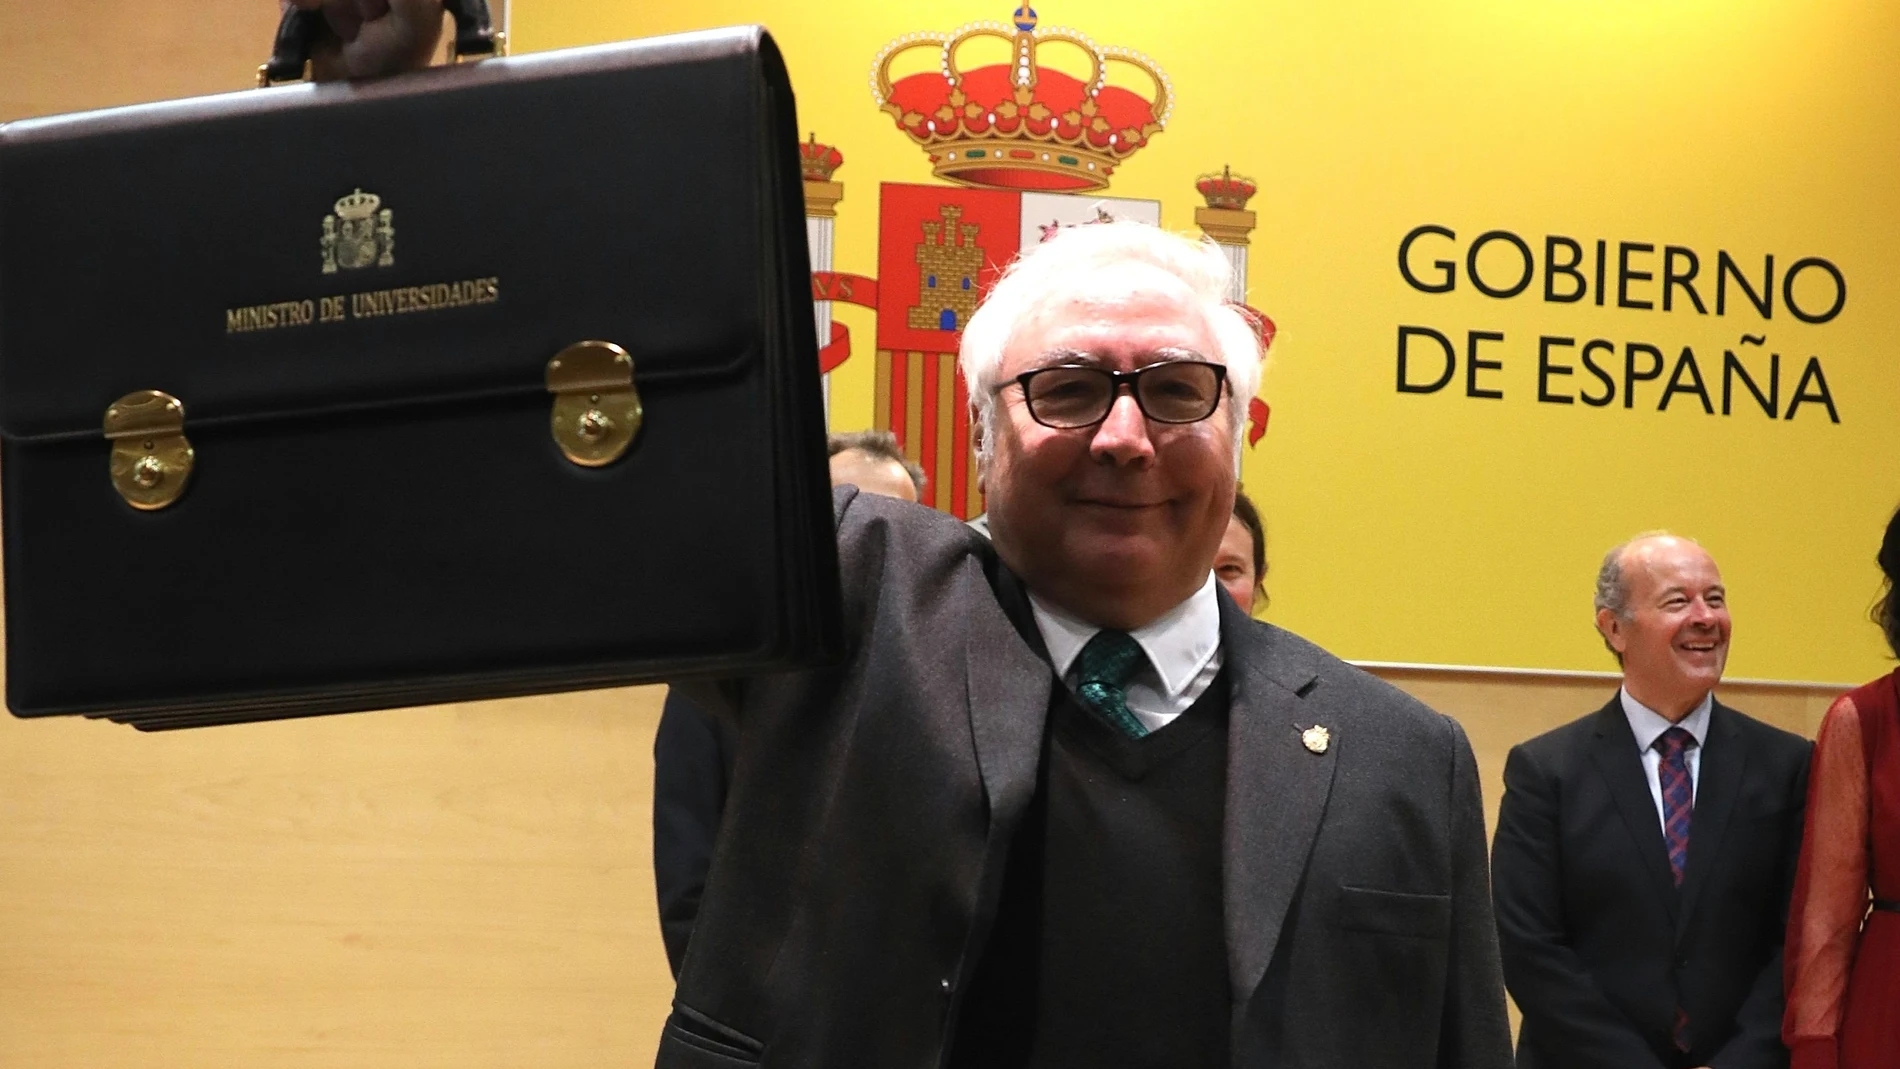 El nuevo ministro de Universidades, Manuel Castells recibe su cartera durante durante la toma de posesión de su cargo en el ministerio de Ciencia, Innovación y Universidades